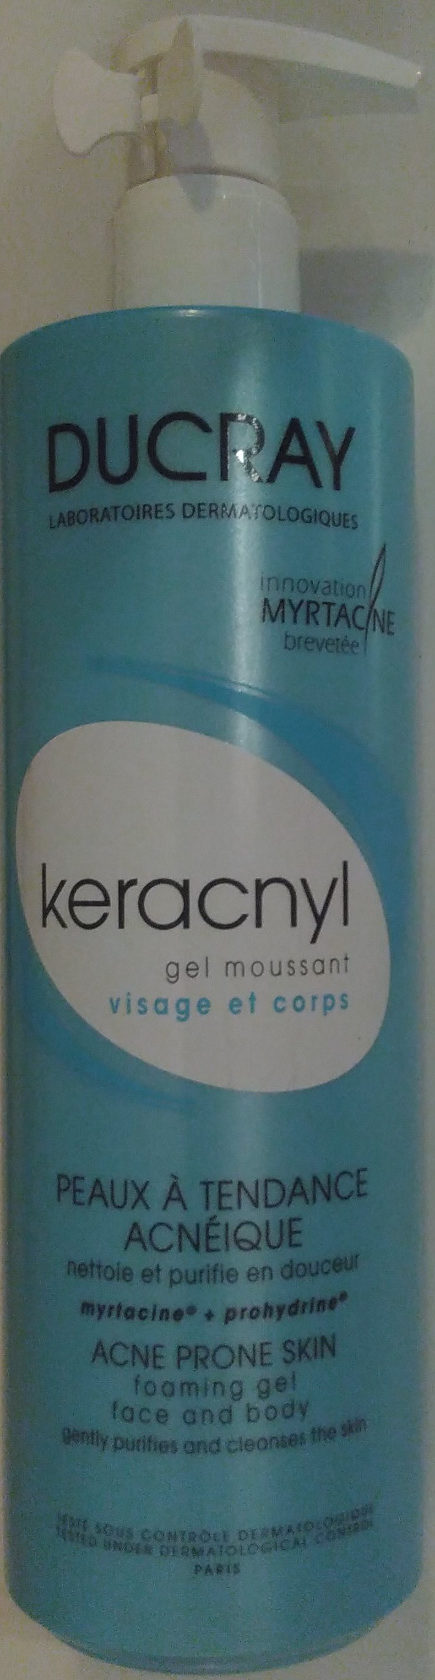 keracnyl - Produit - fr